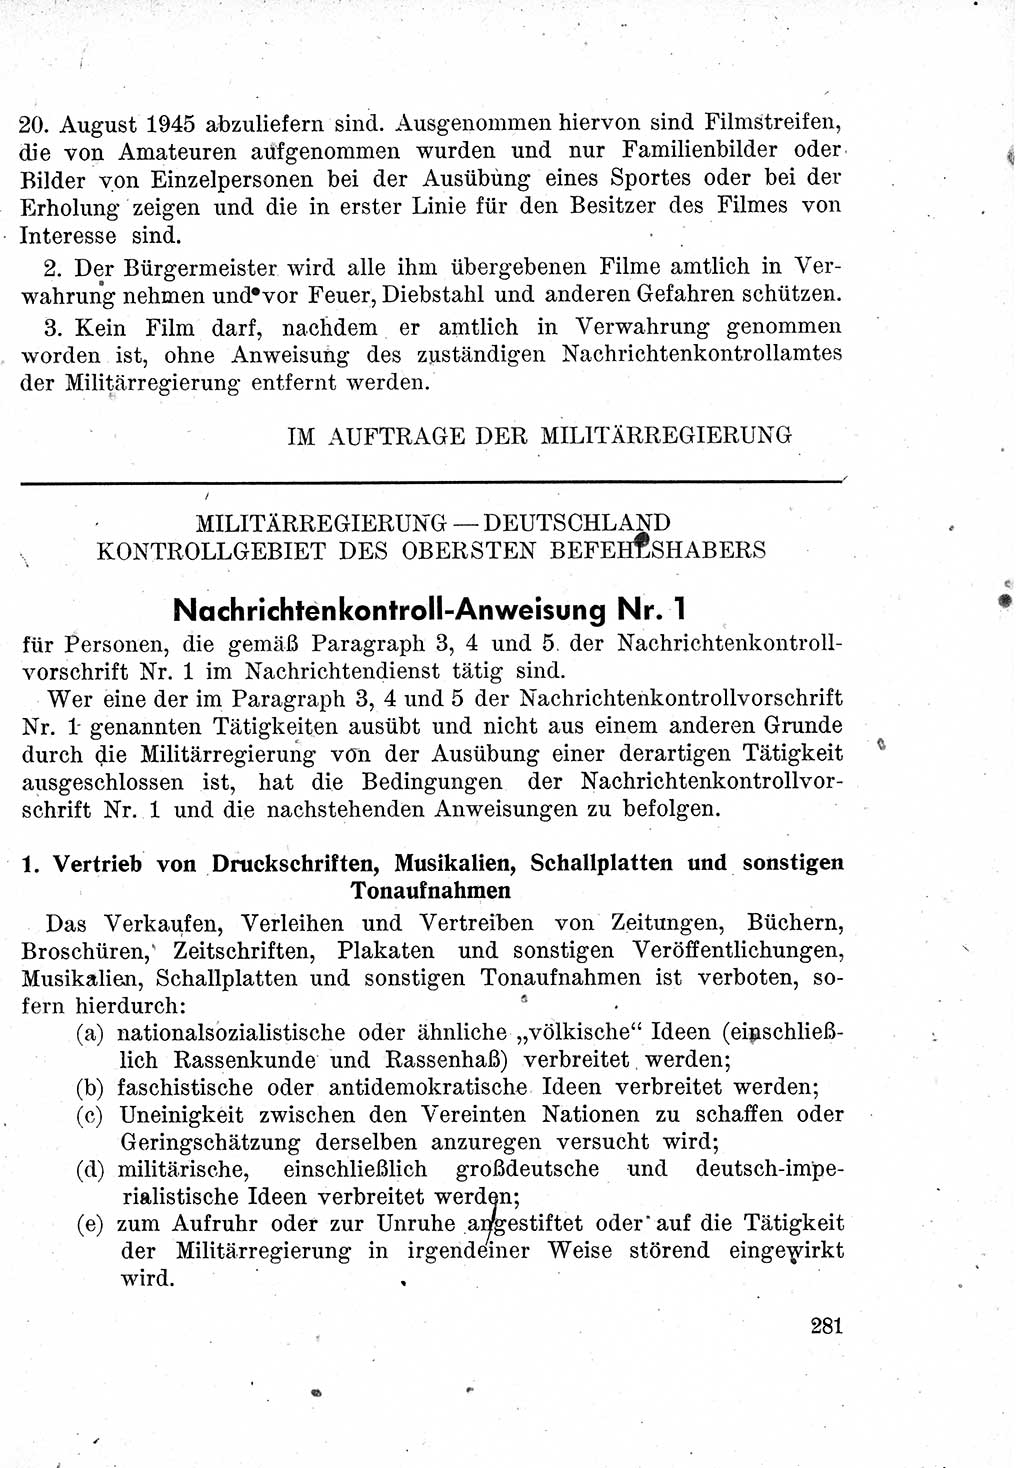 Das Recht der Besatzungsmacht (Deutschland), Proklamationen, Deklerationen, Verordnungen, Gesetze und Bekanntmachungen 1947, Seite 281 (R. Bes. Dtl. 1947, S. 281)